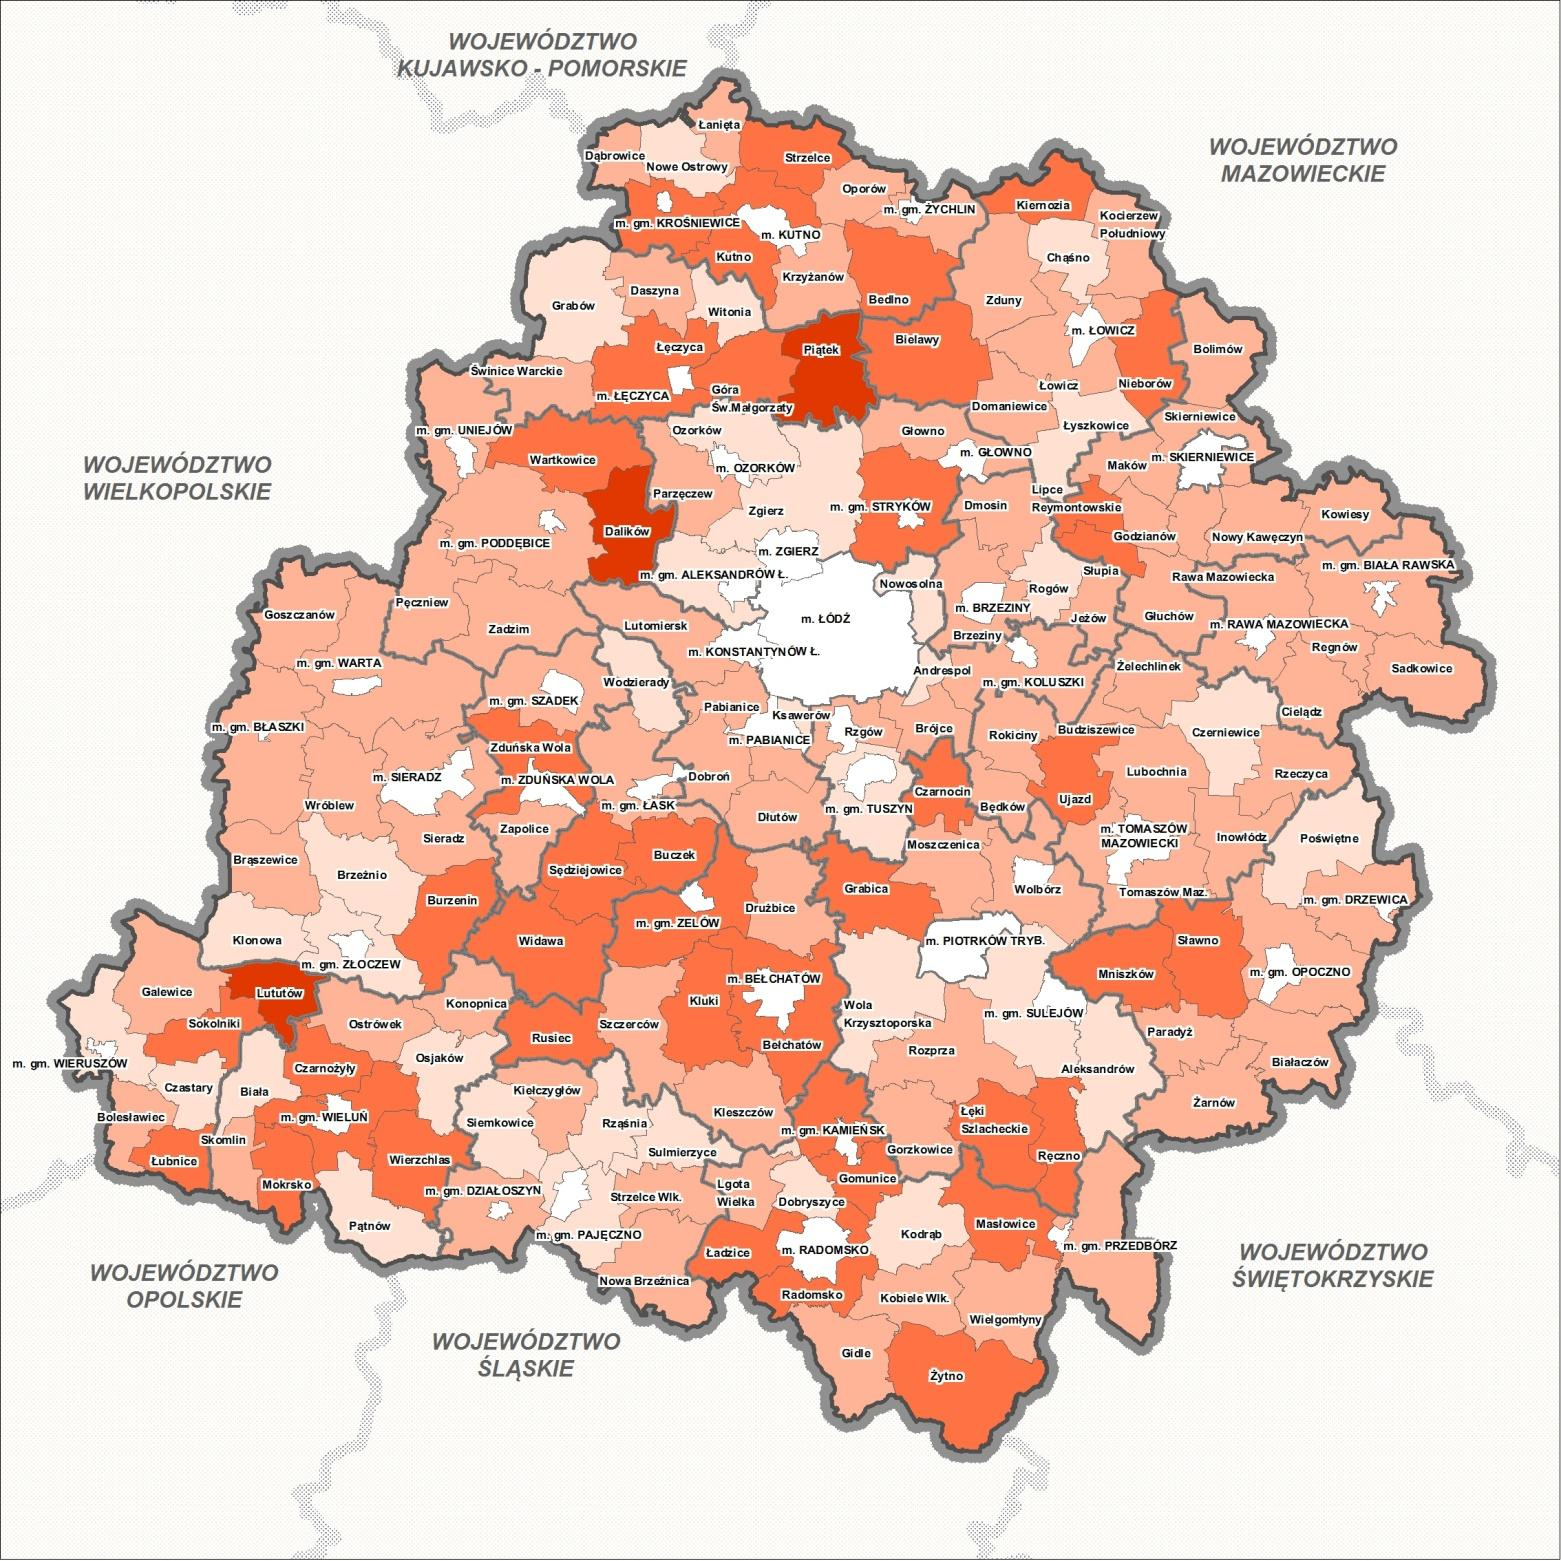 Wielofunkcyjnośd gminy: liczba kierunków wykorzystania powierzchni gminy przekraczająca średnią dla